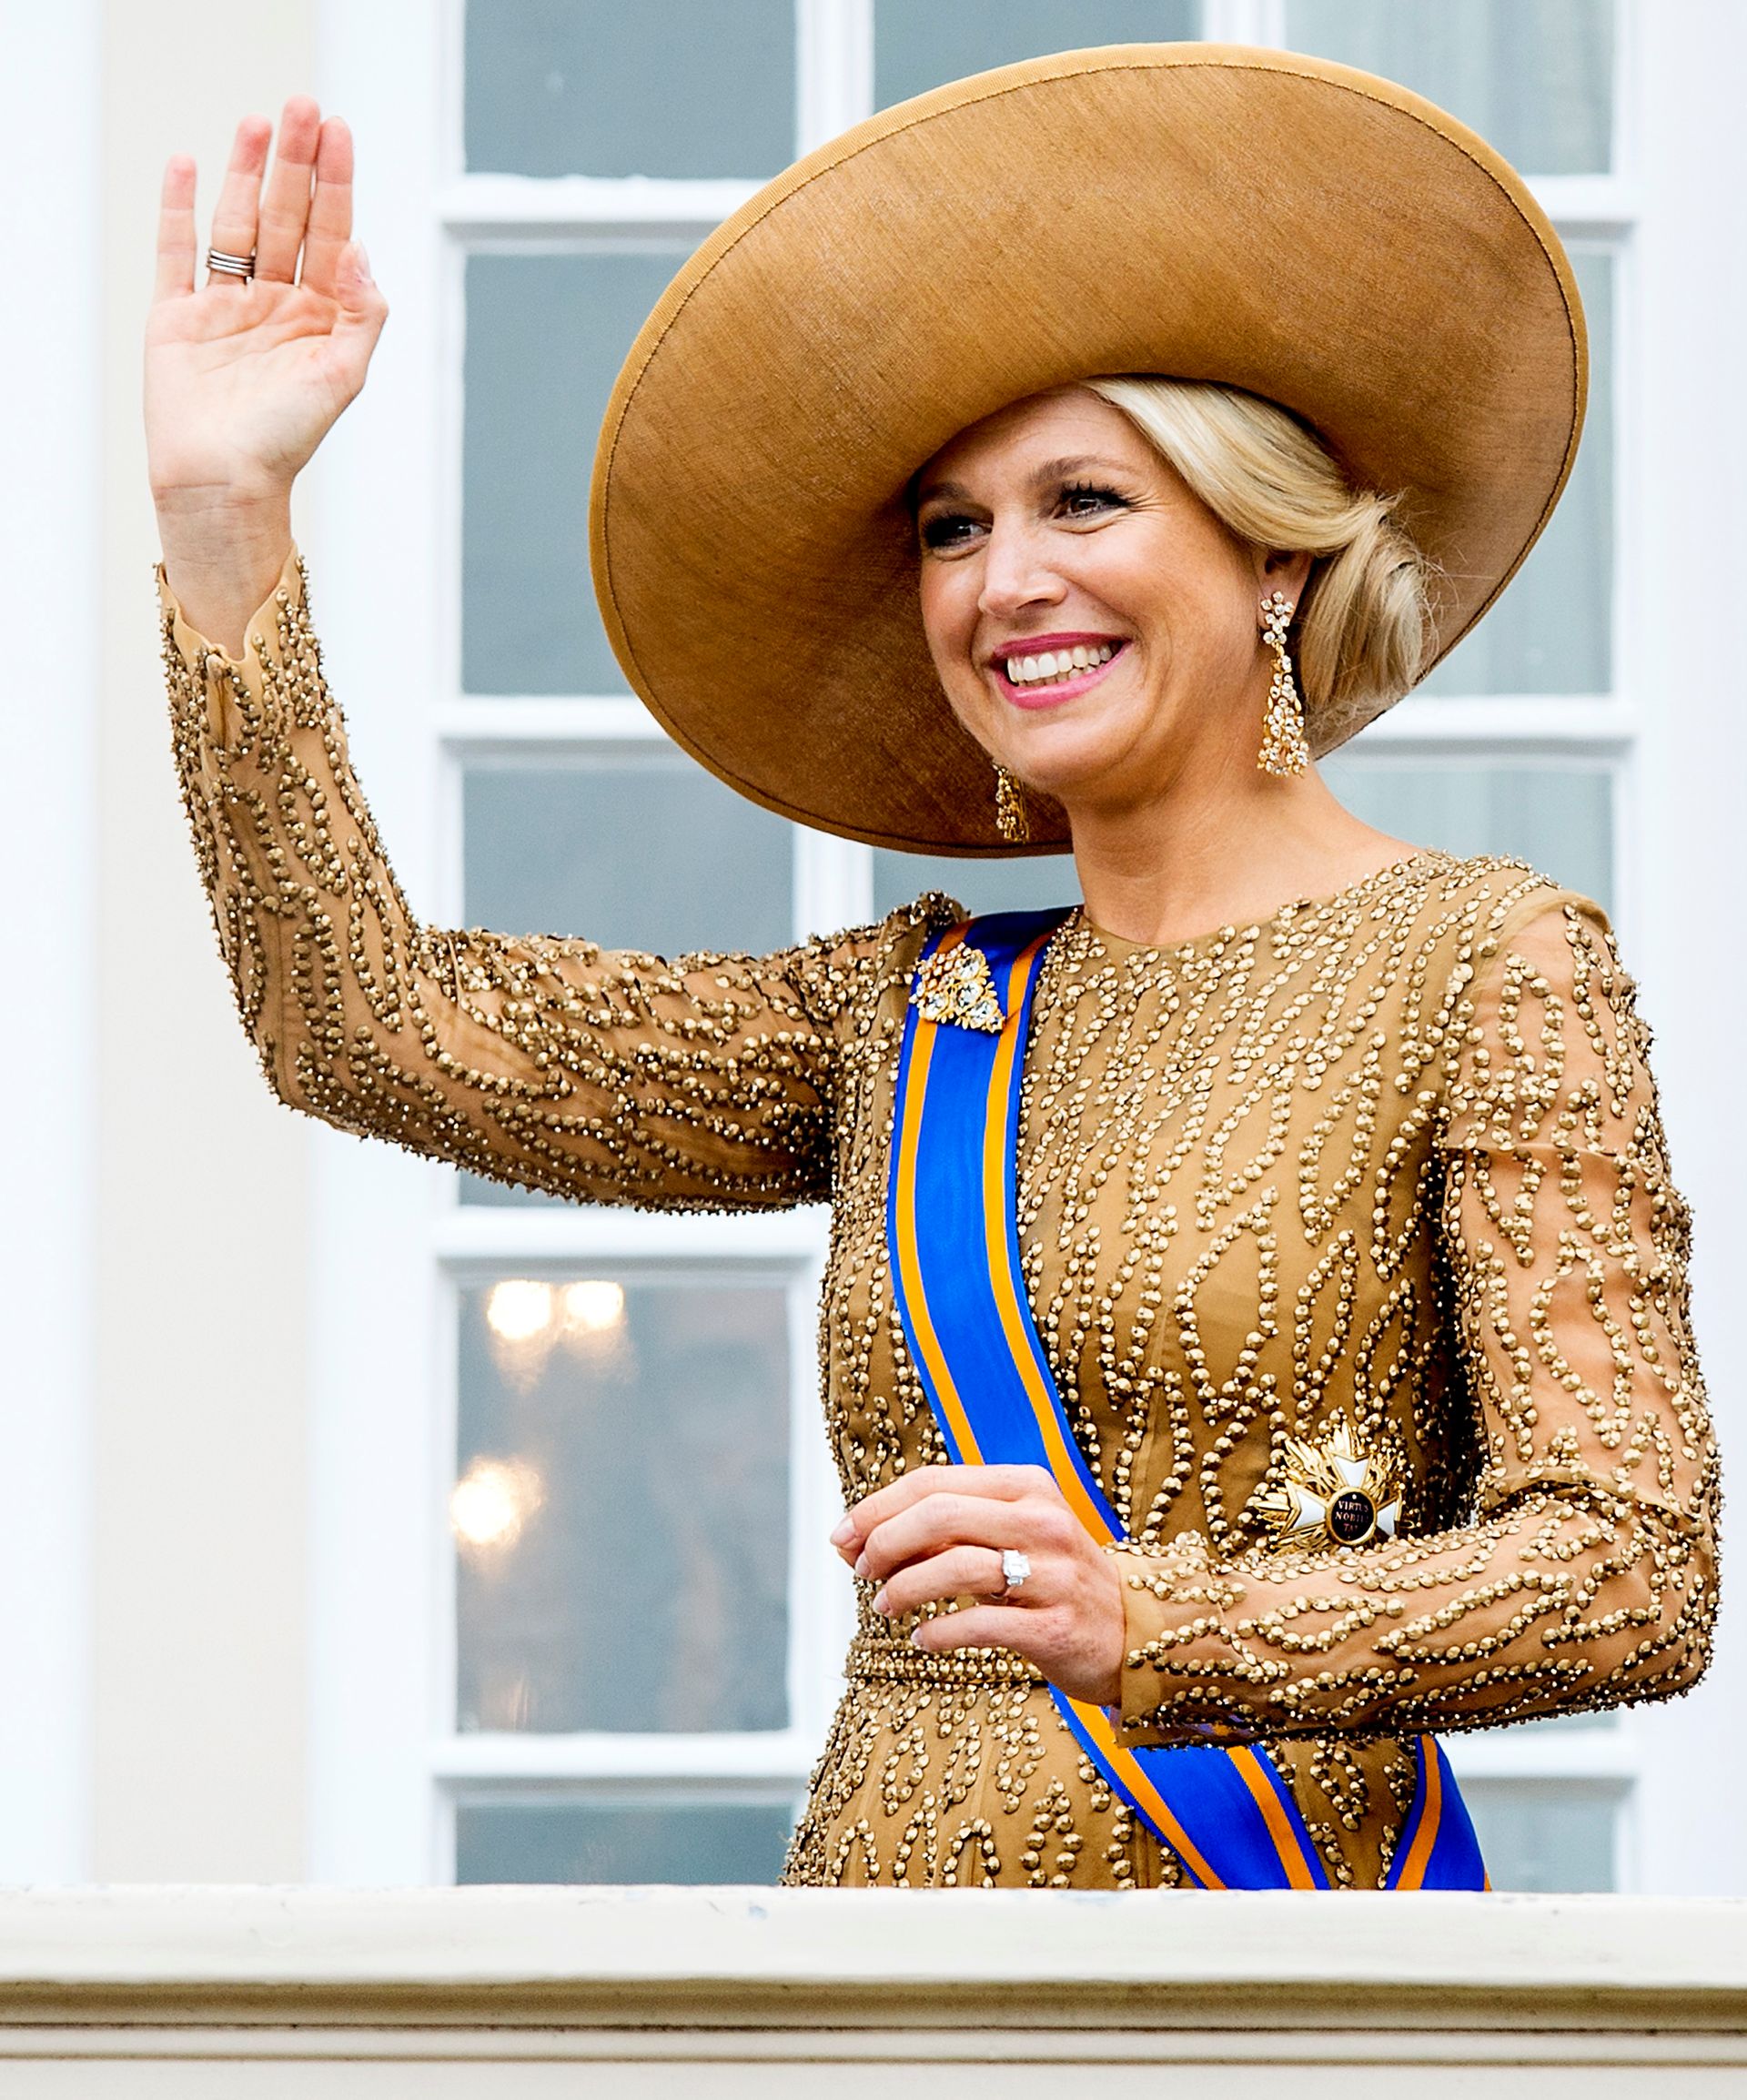 Máxima in 2013, voor het eerst als koningin.